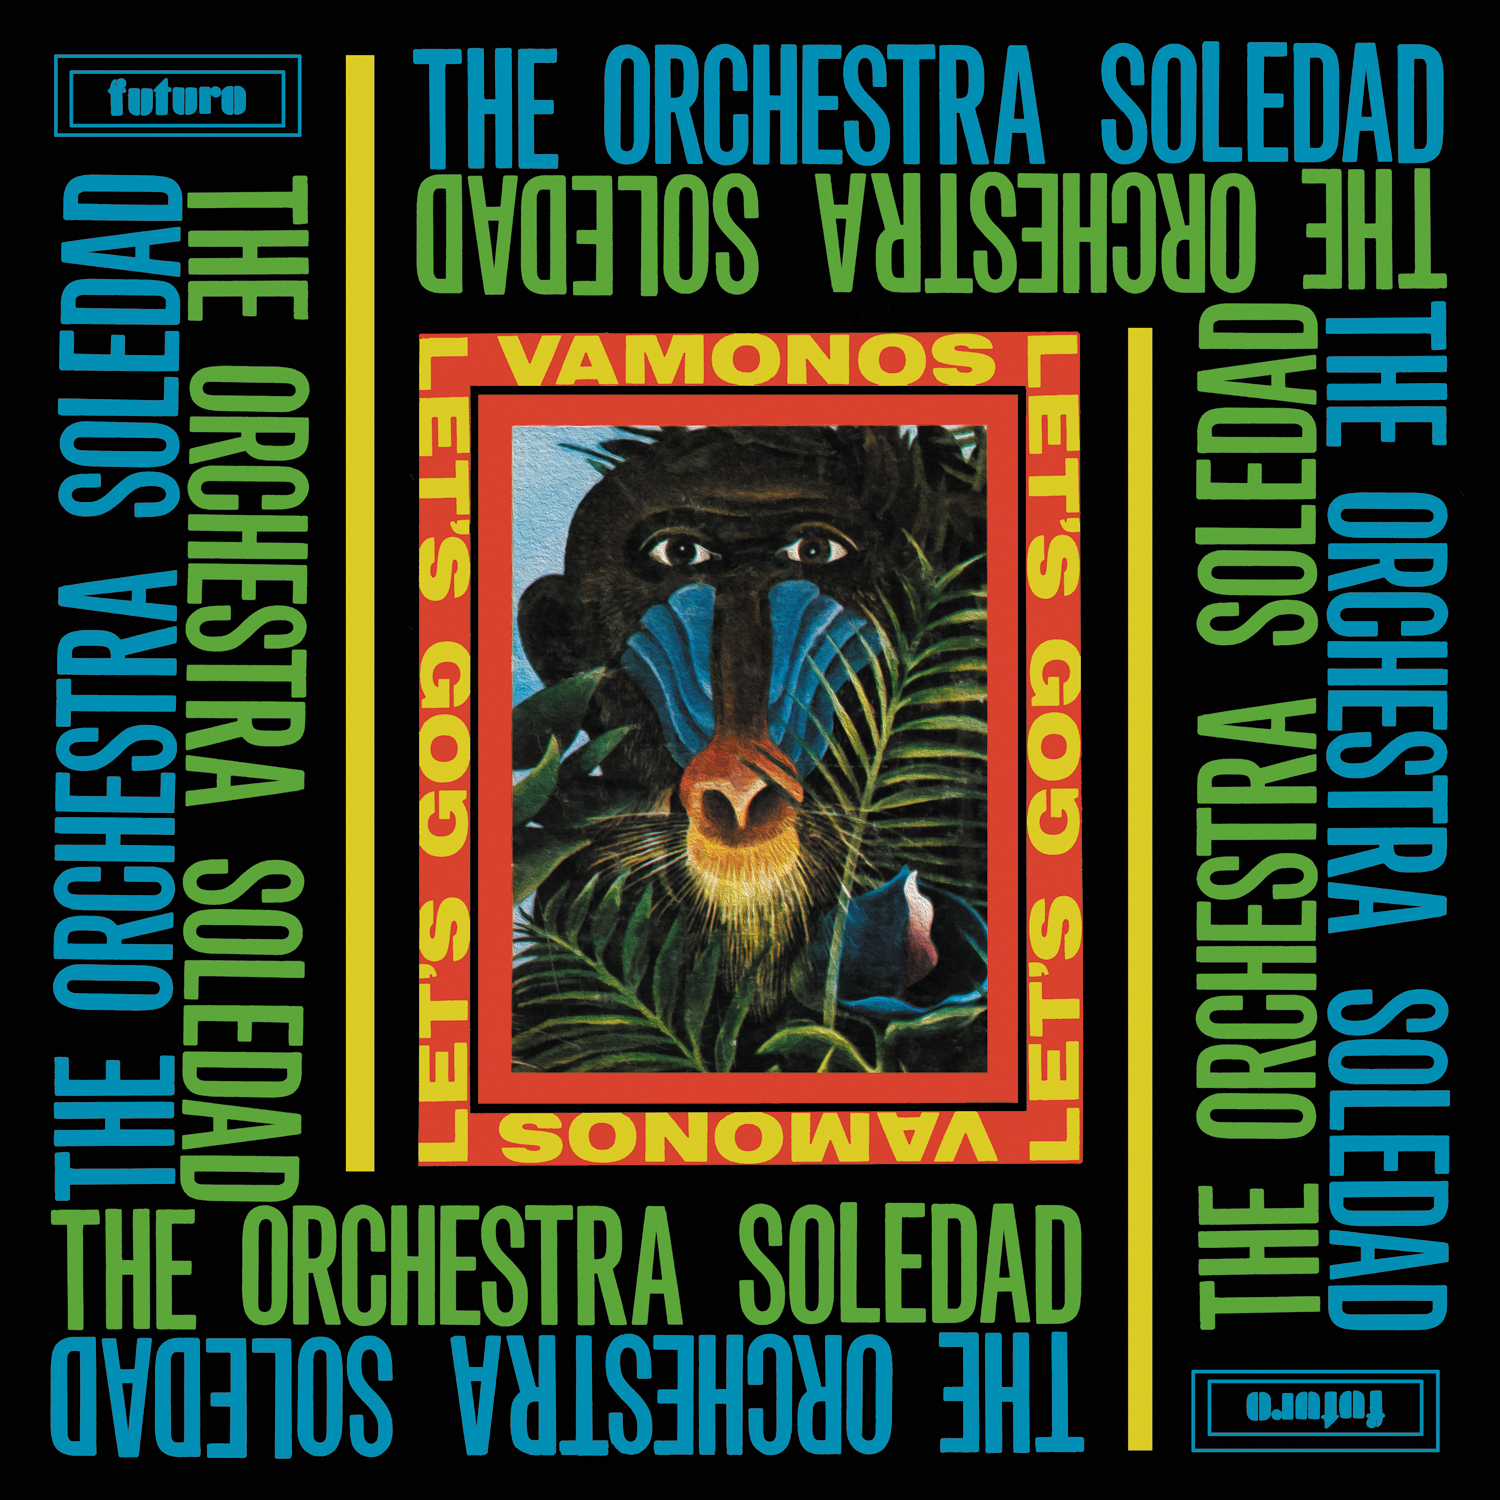 Редкий сборник уличной латиноамериканской сальсы The Orchestra Soledad "Vamonos / Let’s Go!" получил первое за годы переиздание